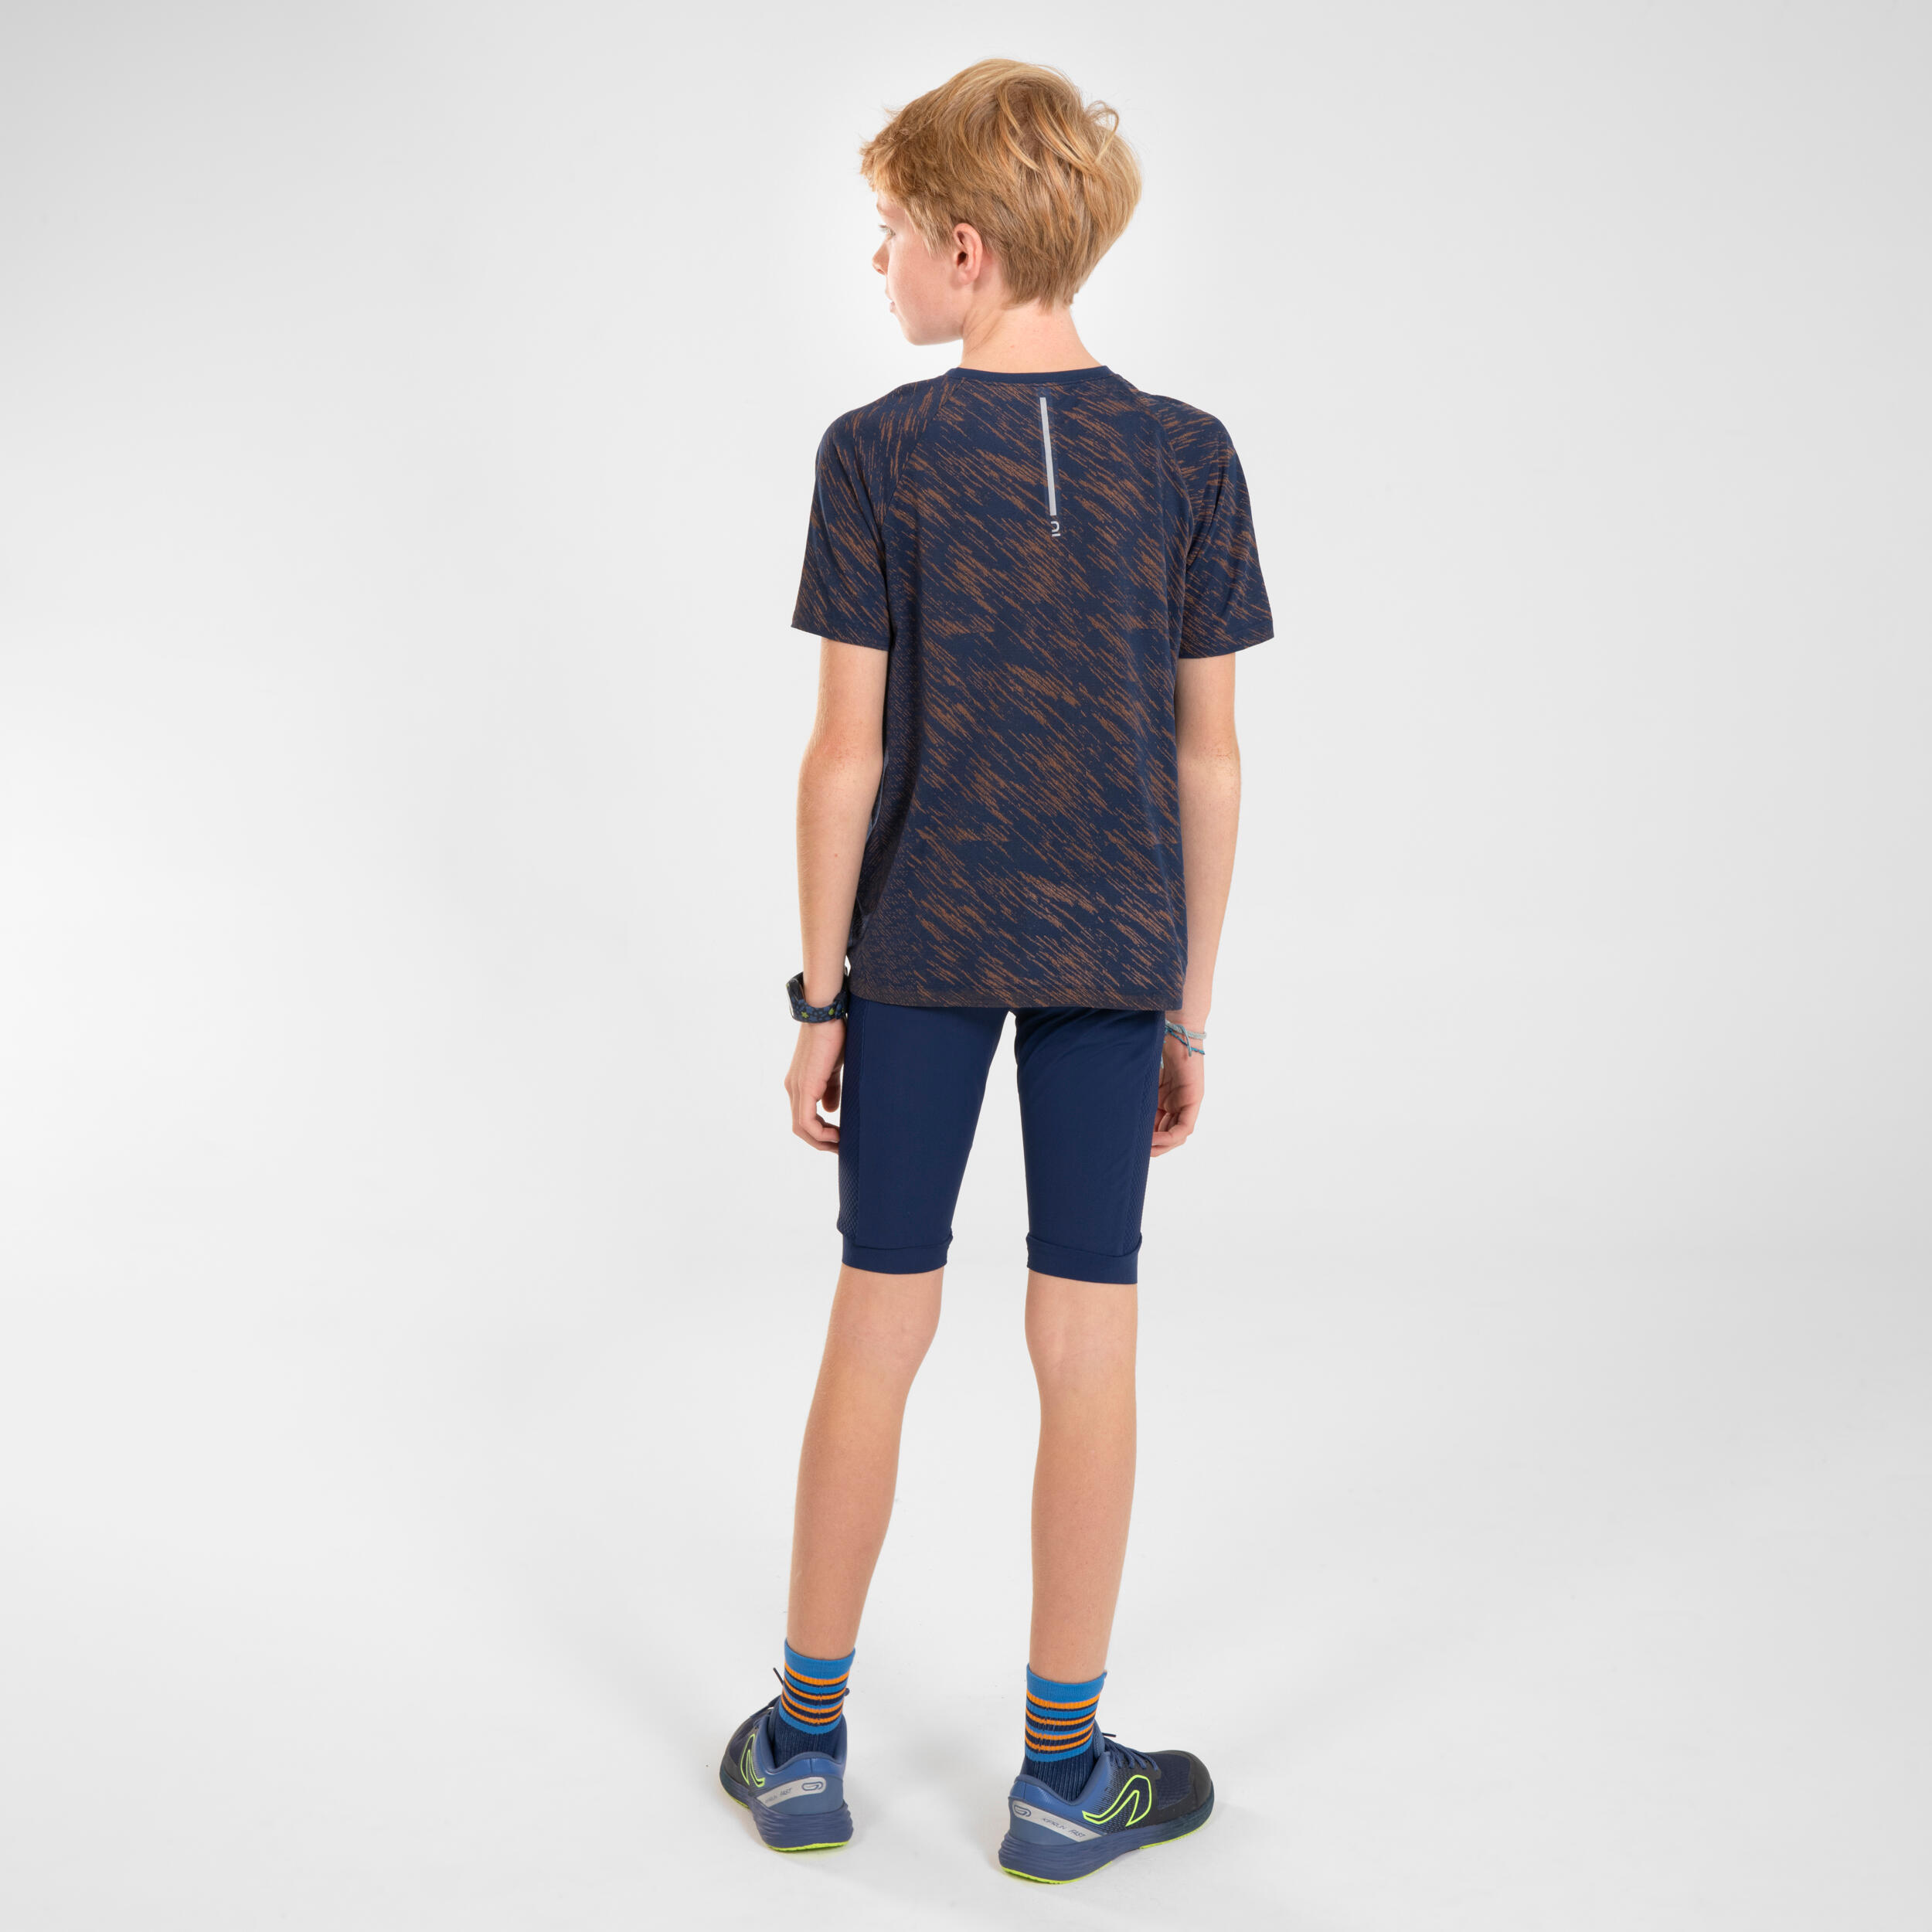 KIPRUN CARE Kids' Seamless Running T-Shirt - navy/orange 9/9